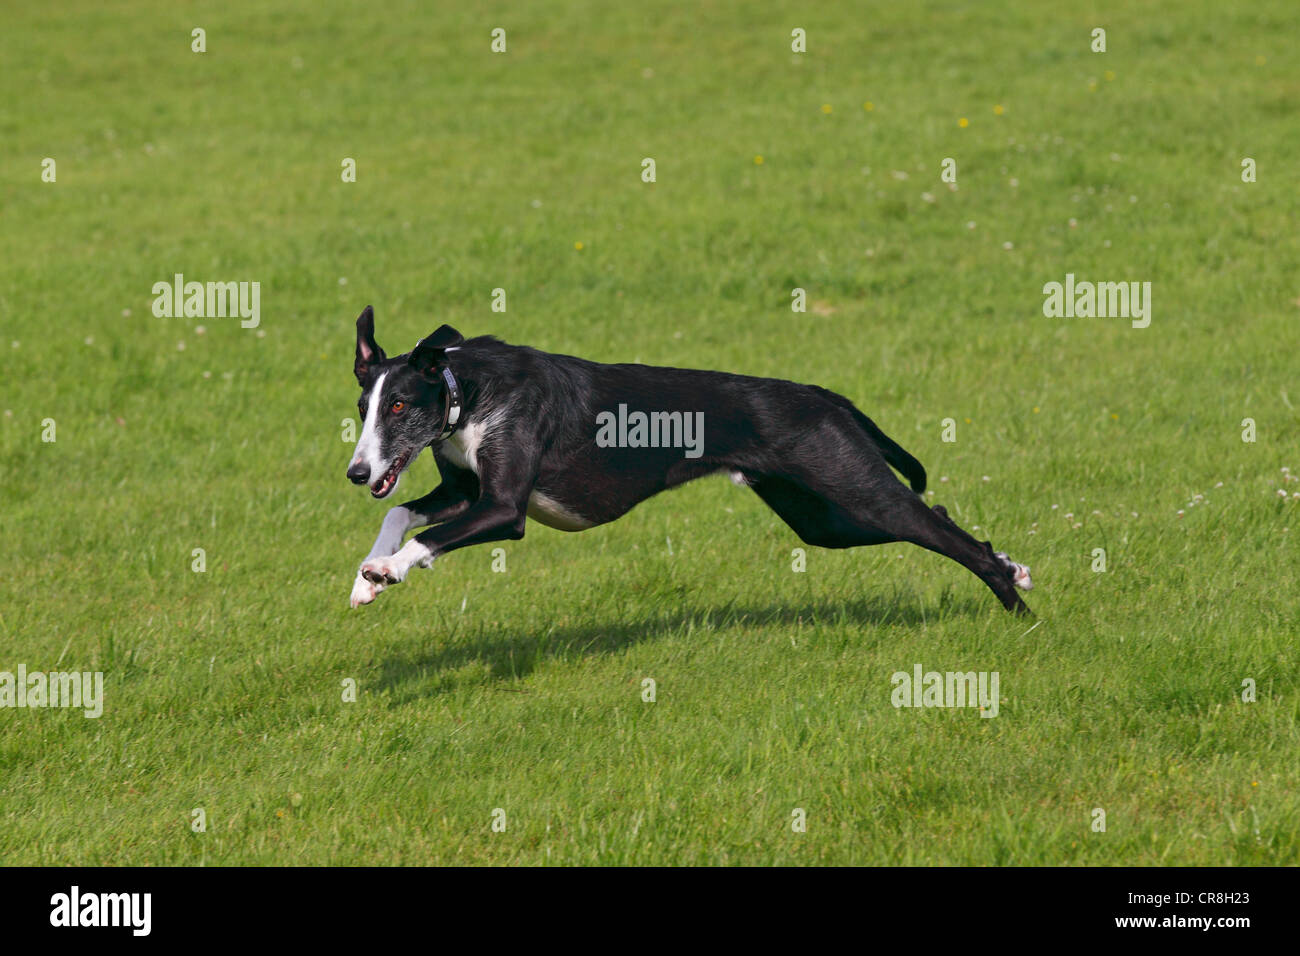 Galgo Espanol, galgo spagnolo, spagnolo Greyhound (Canis lupus familiaris), in esecuzione su una coursing race course Foto Stock